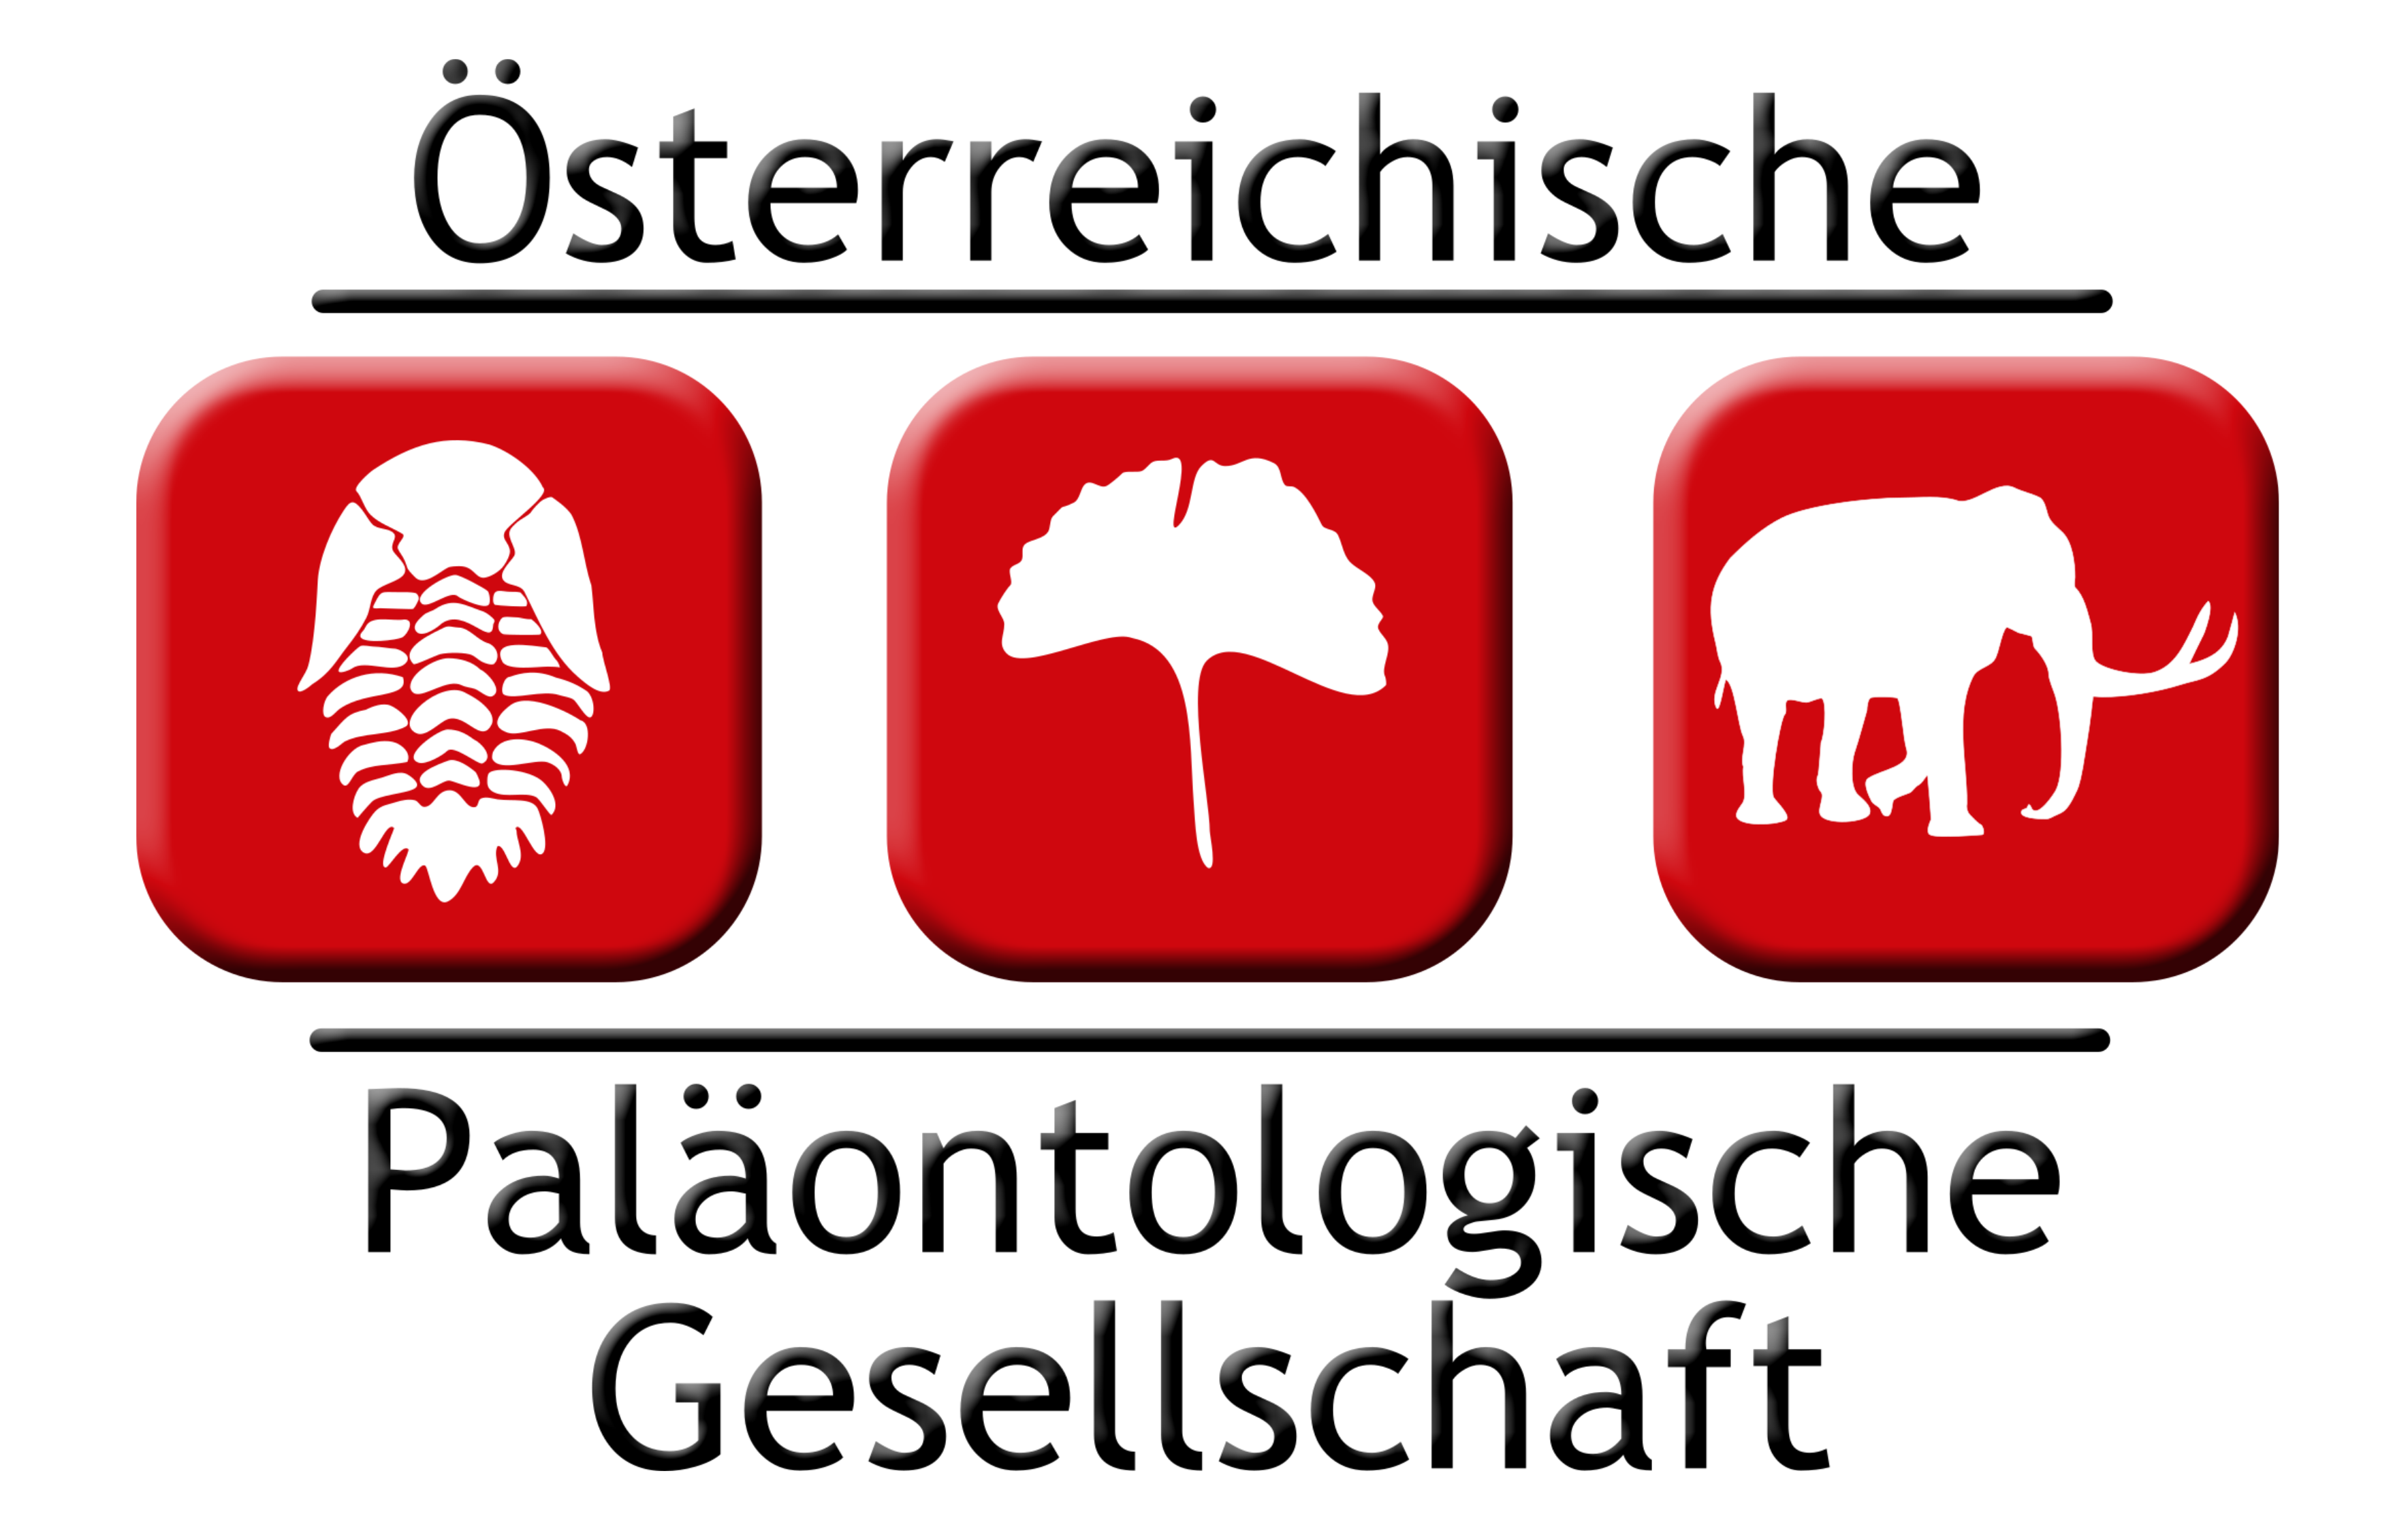 Österreichische Paläontologische Gesellschaft (ÖPG)